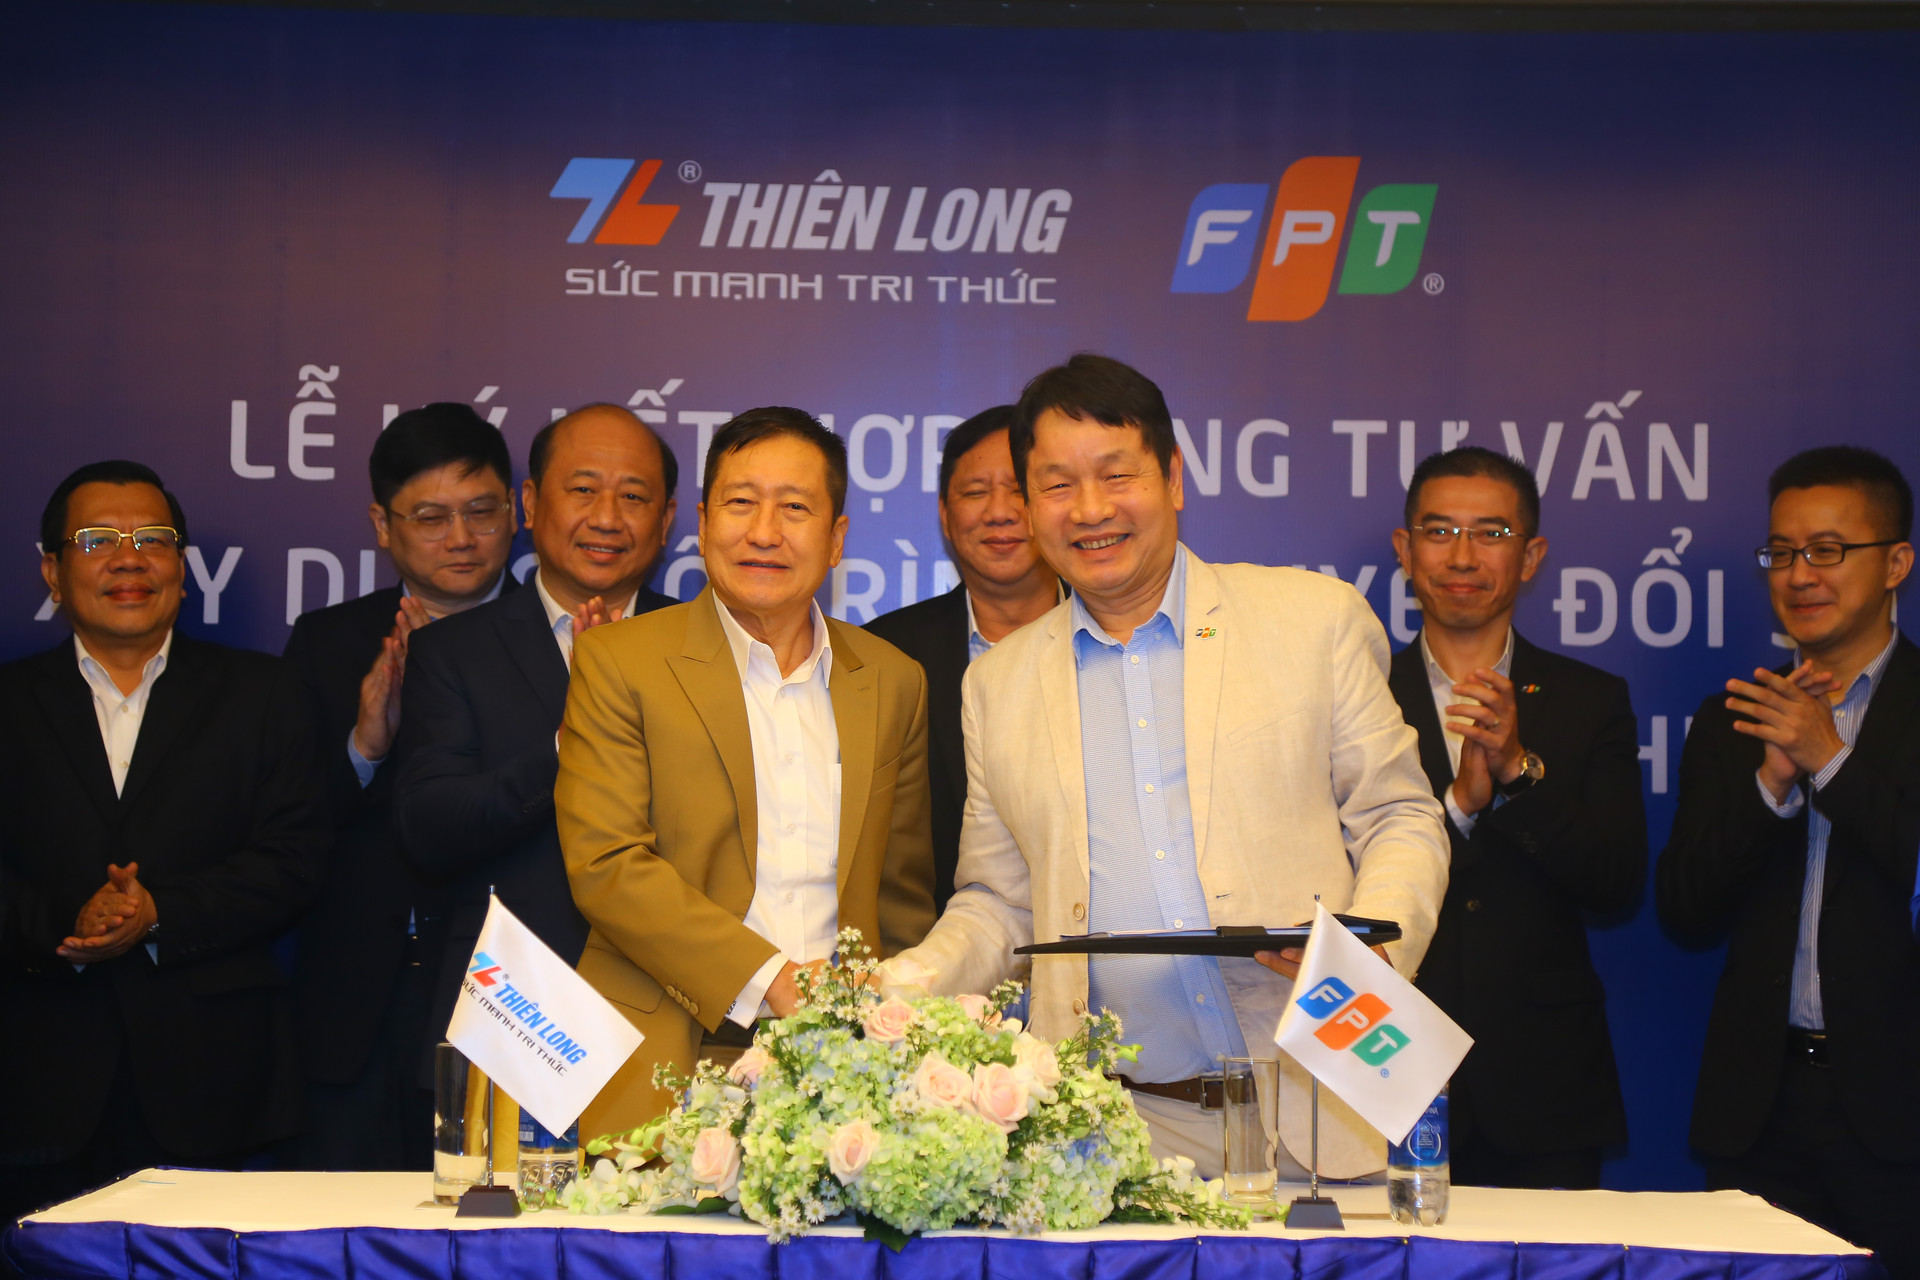 FPT và Thiên Long ký kết hợp đồng tư vấn chuyển đổi số toàn diện - Ảnh 1.